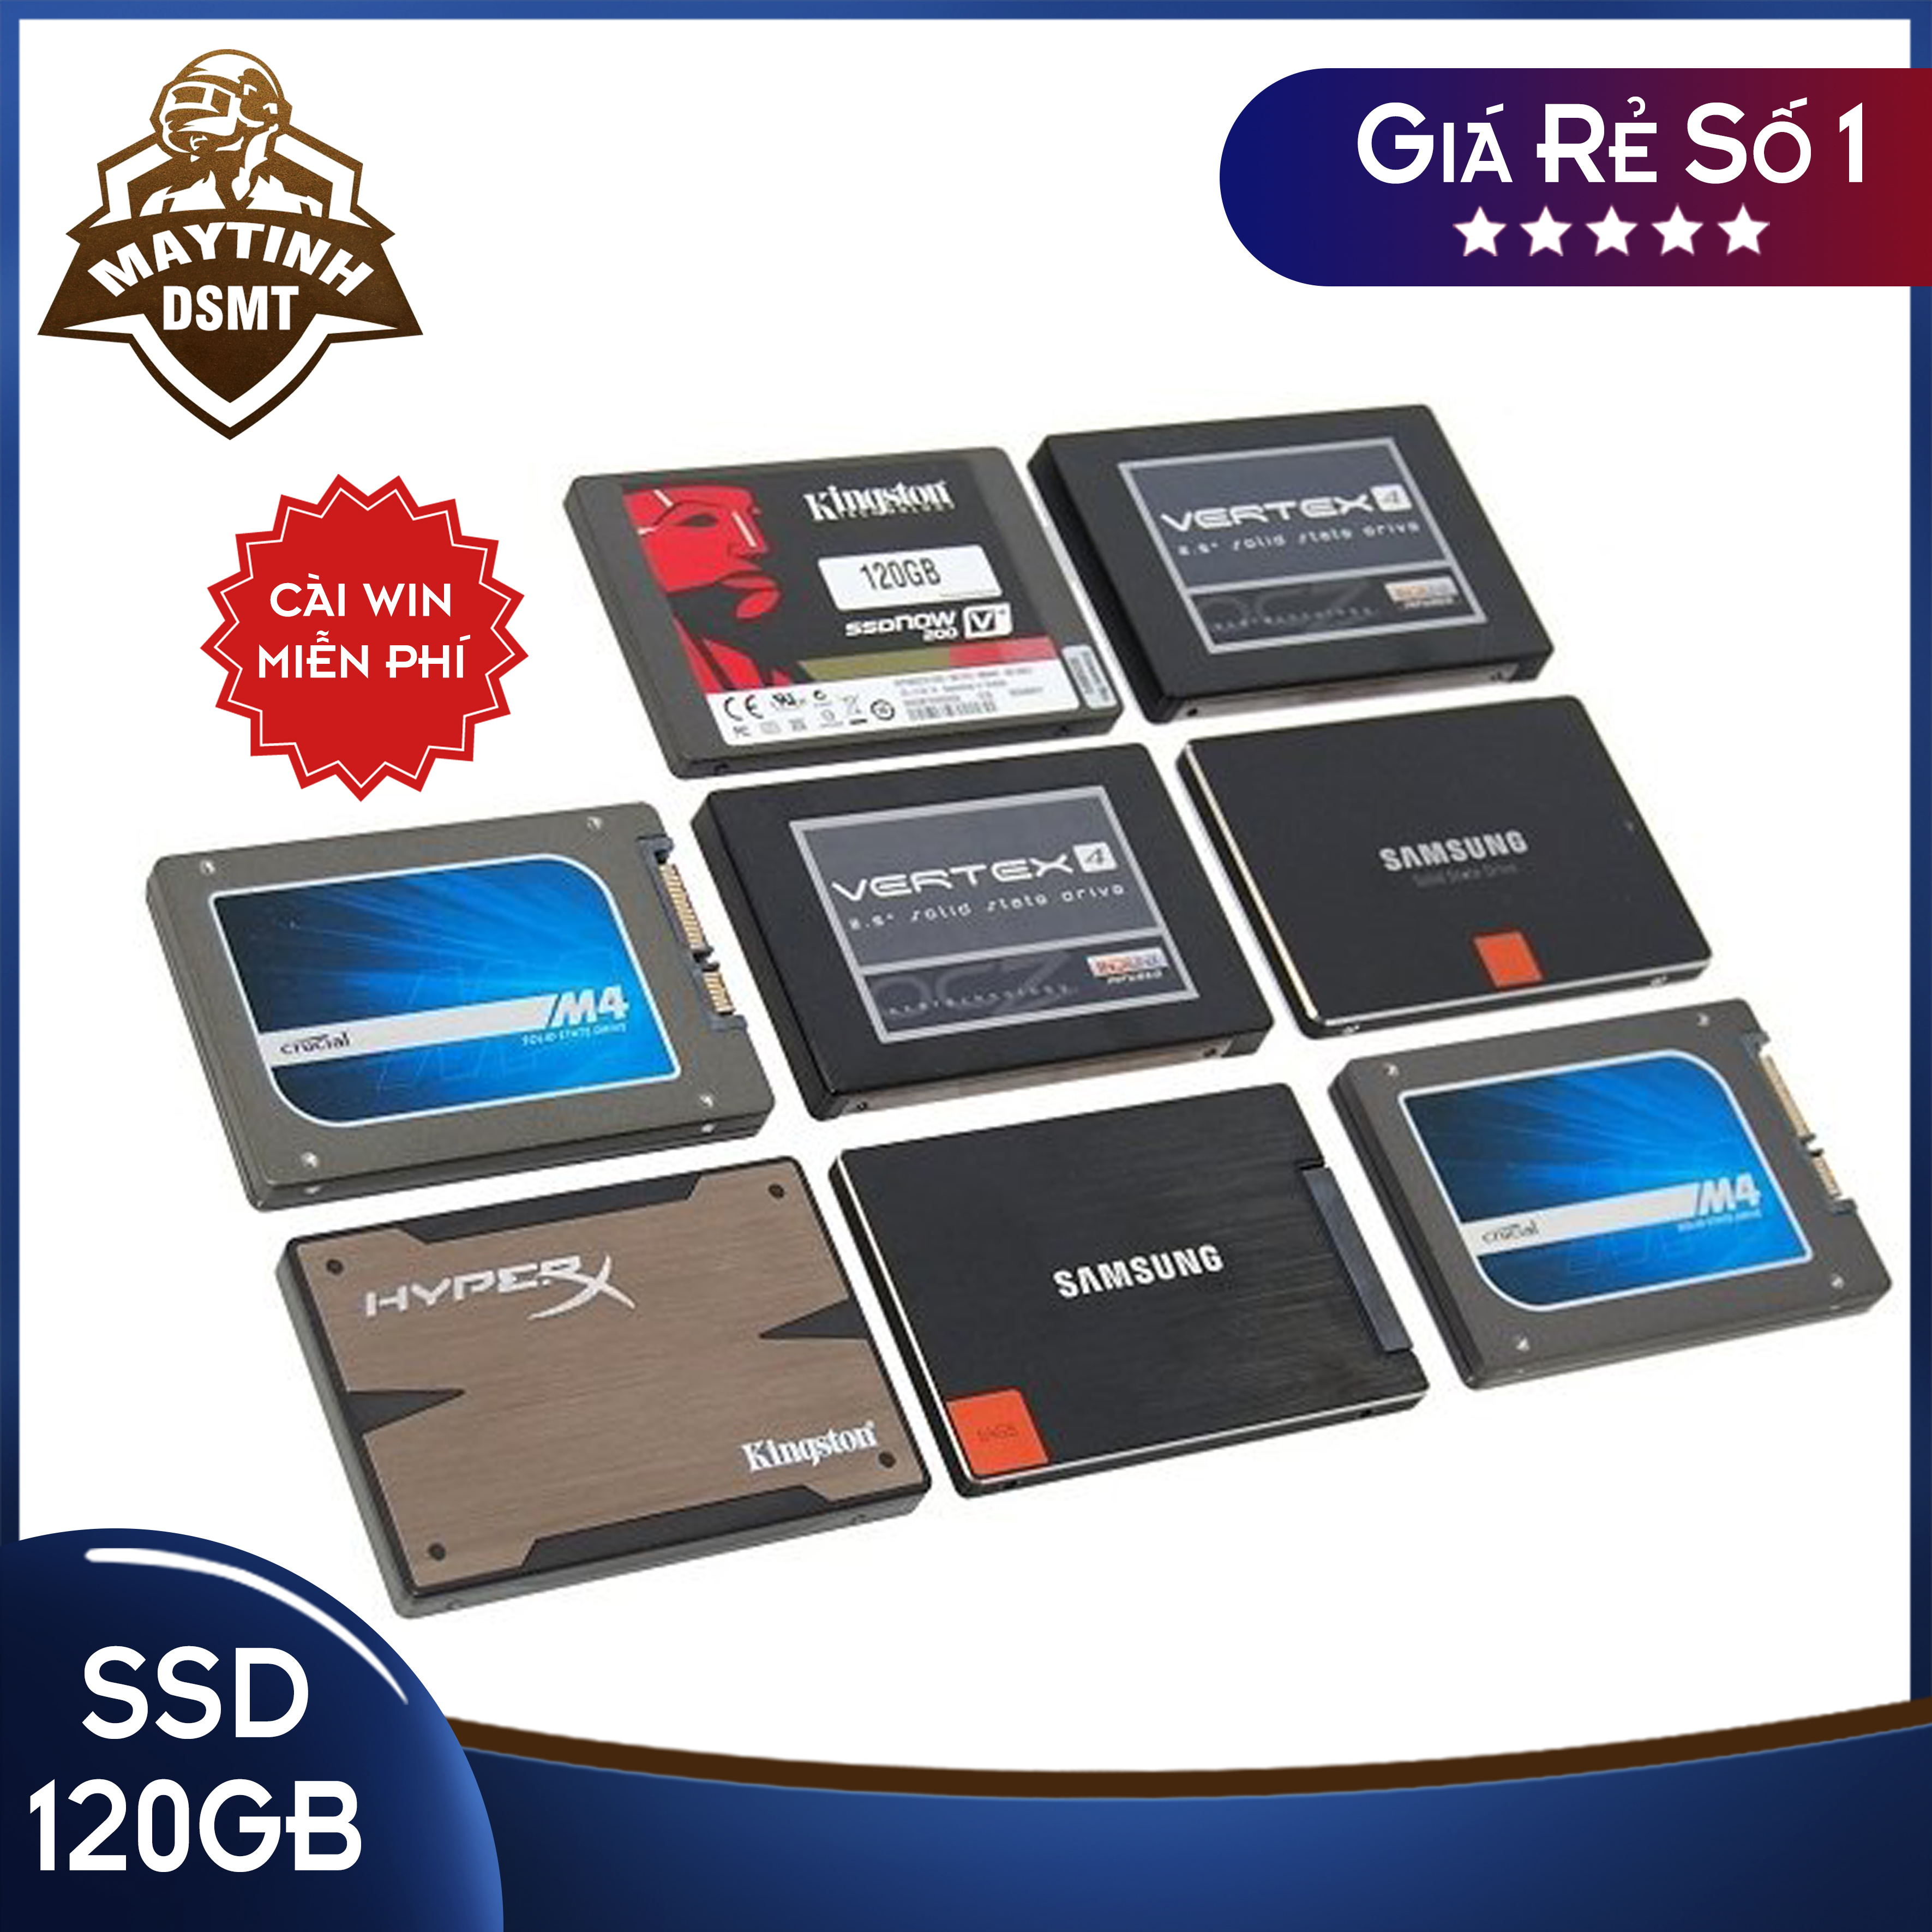 Ổ cứng SSD 120GB cũ chính hãng, hàng thanh lý văn phòng, quán net, sức khỏe tốt 100%